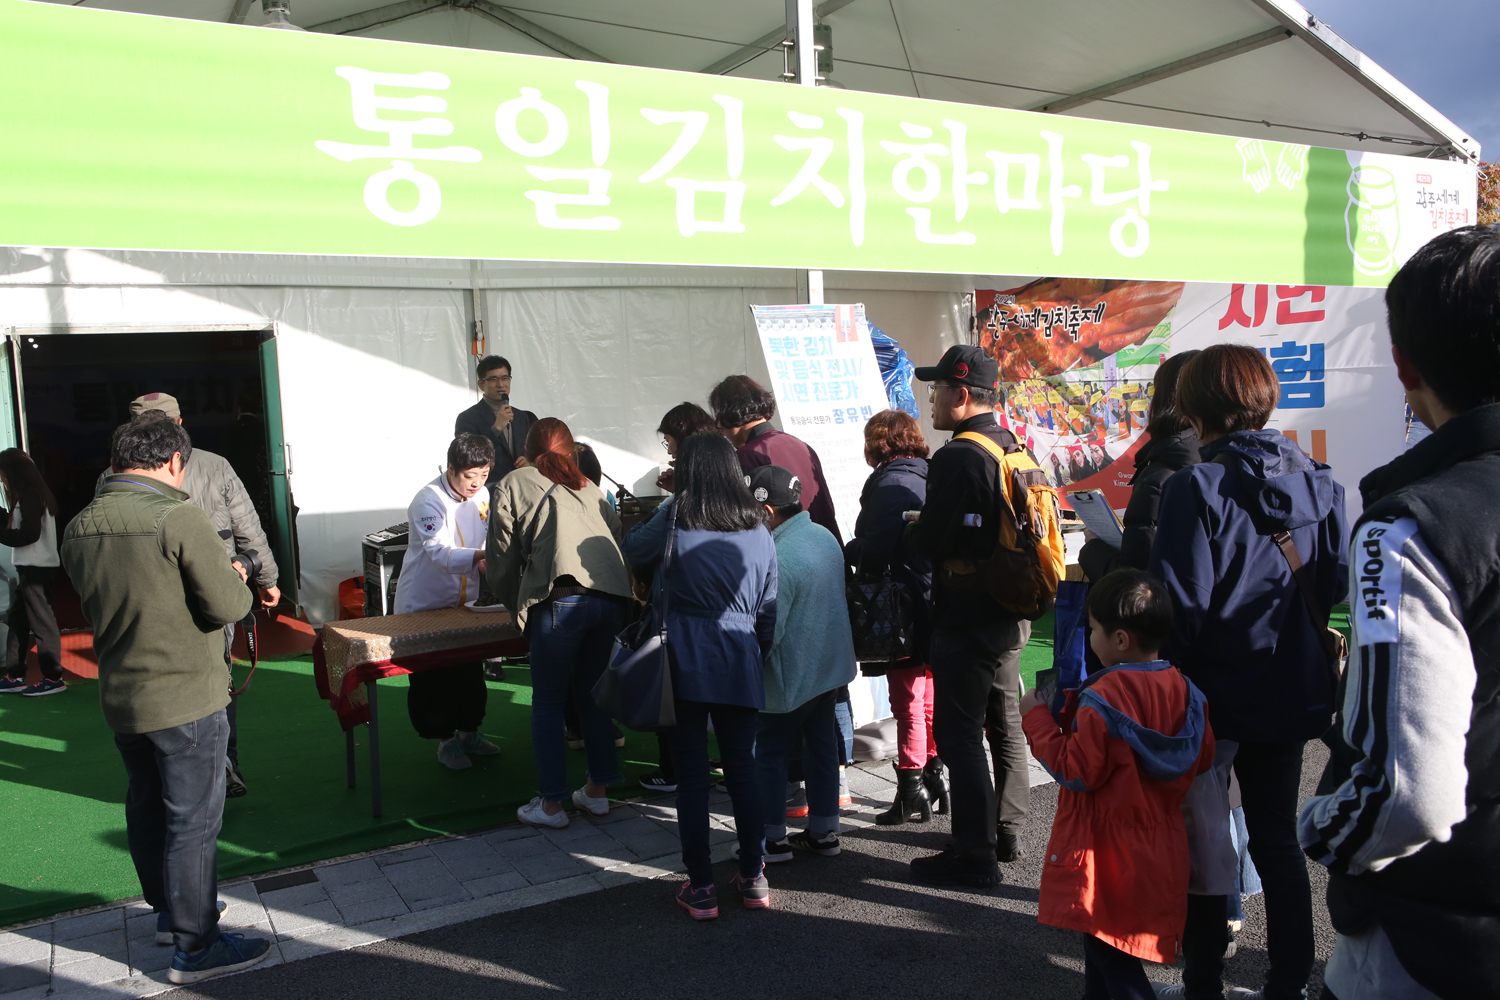 2018년 광주세계김치축제 행사 사진